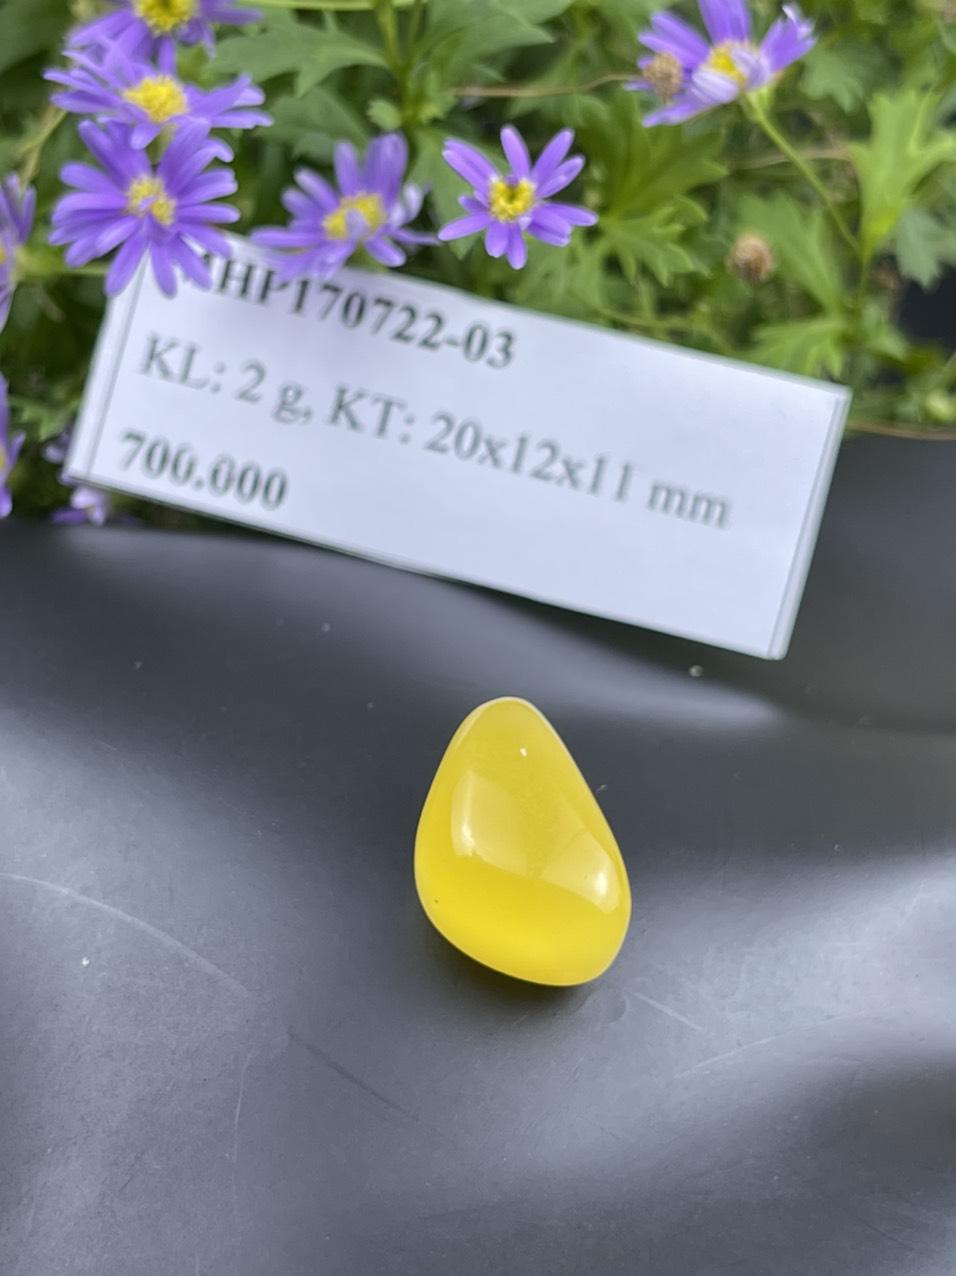 Mặt đá hổ phách vàng MHP170722-03